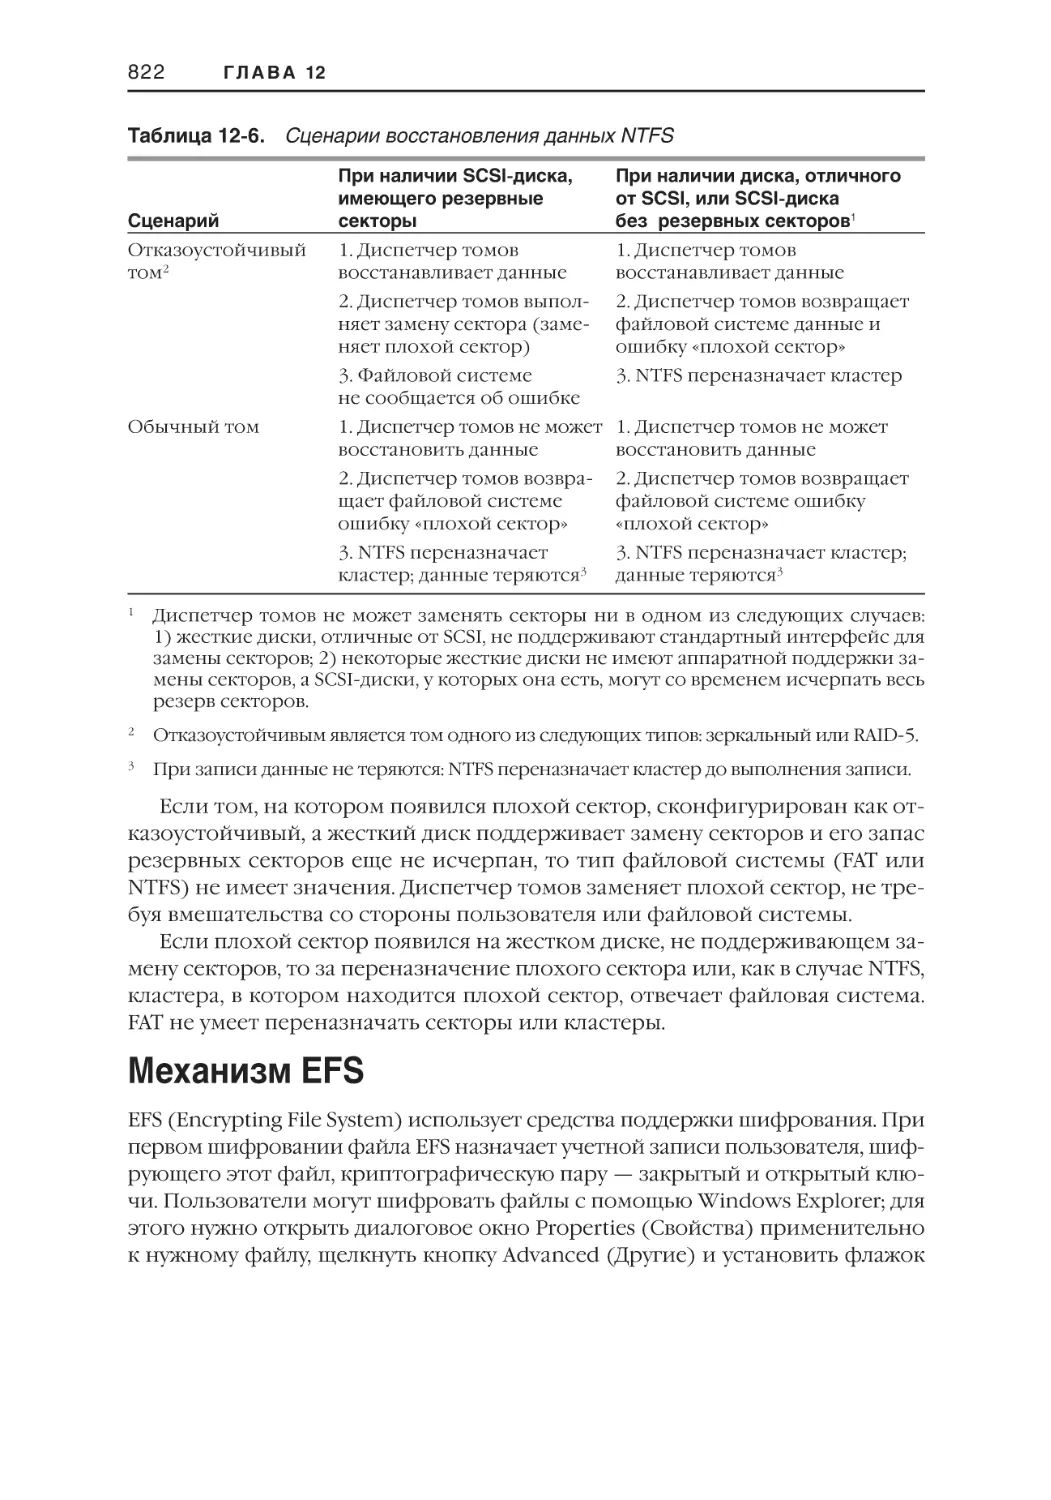 Механизм EFS